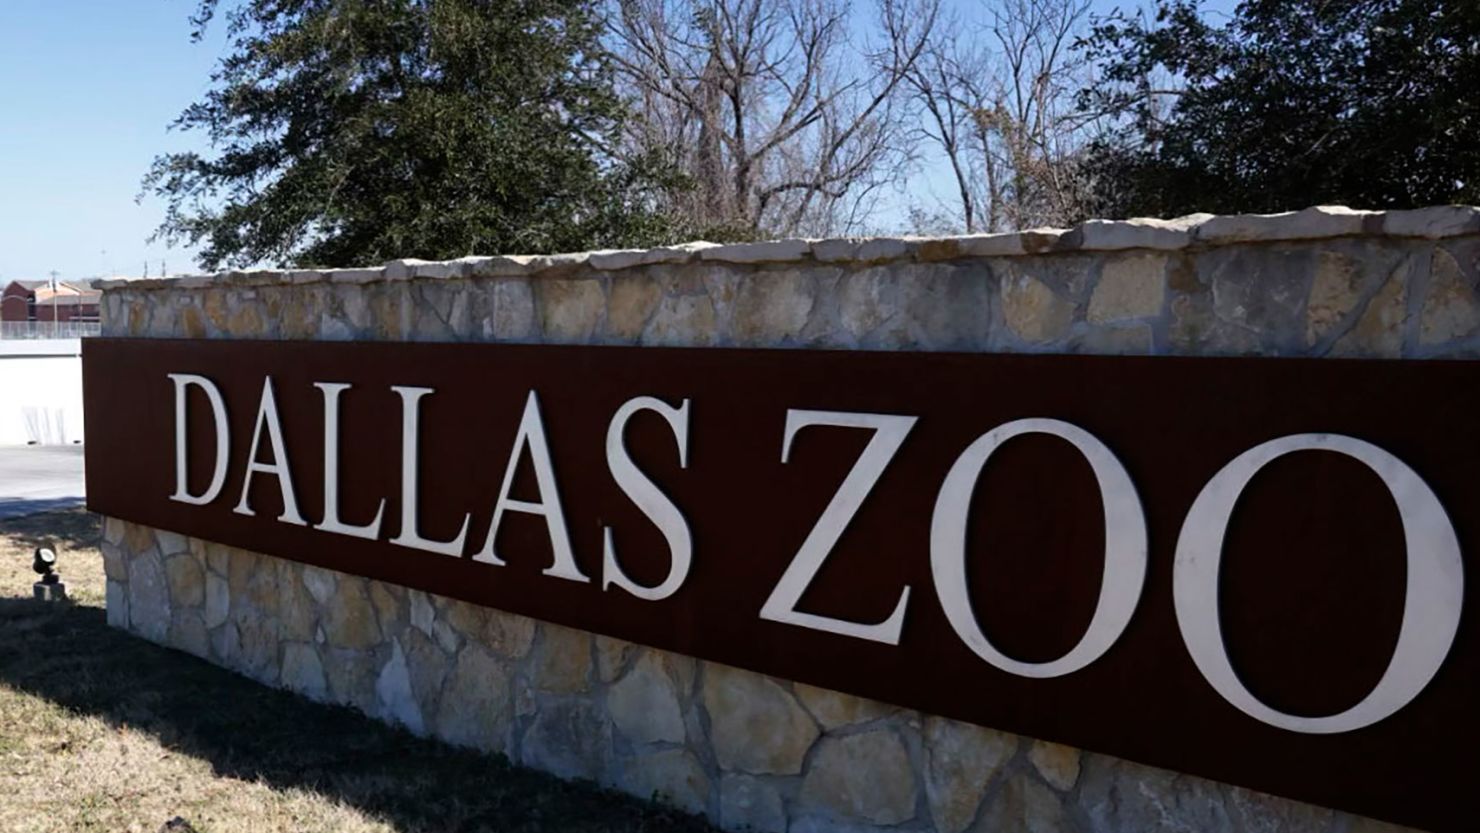 Dallas zoo closes after clouded leopard escapes its enclosure